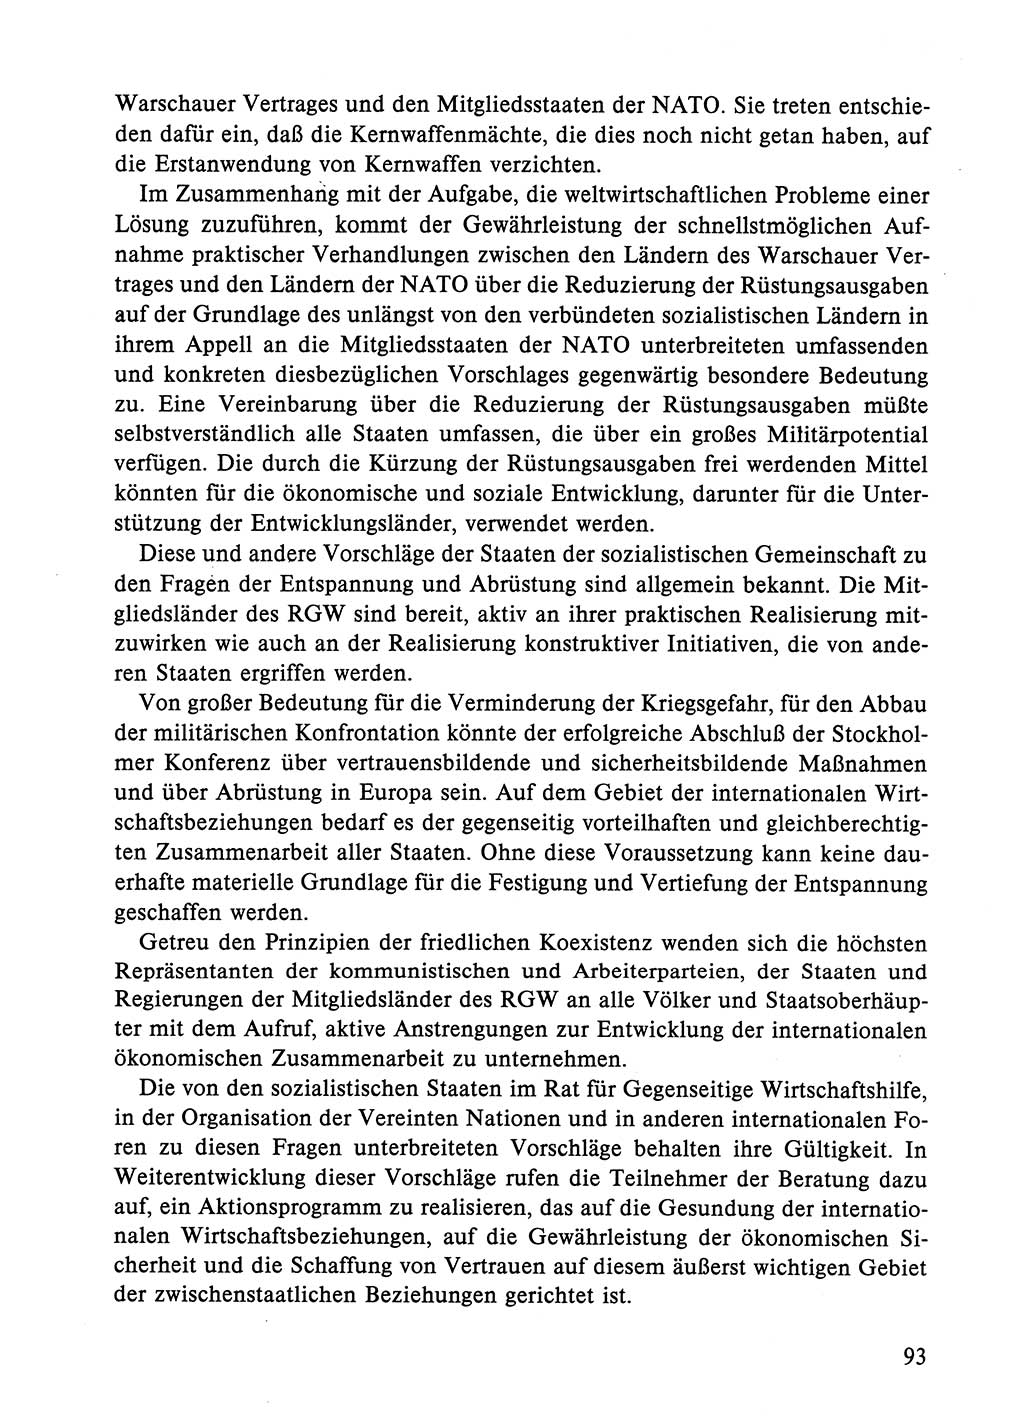 Dokumente der Sozialistischen Einheitspartei Deutschlands (SED) [Deutsche Demokratische Republik (DDR)] 1984-1985, Seite 93 (Dok. SED DDR 1984-1985, S. 93)